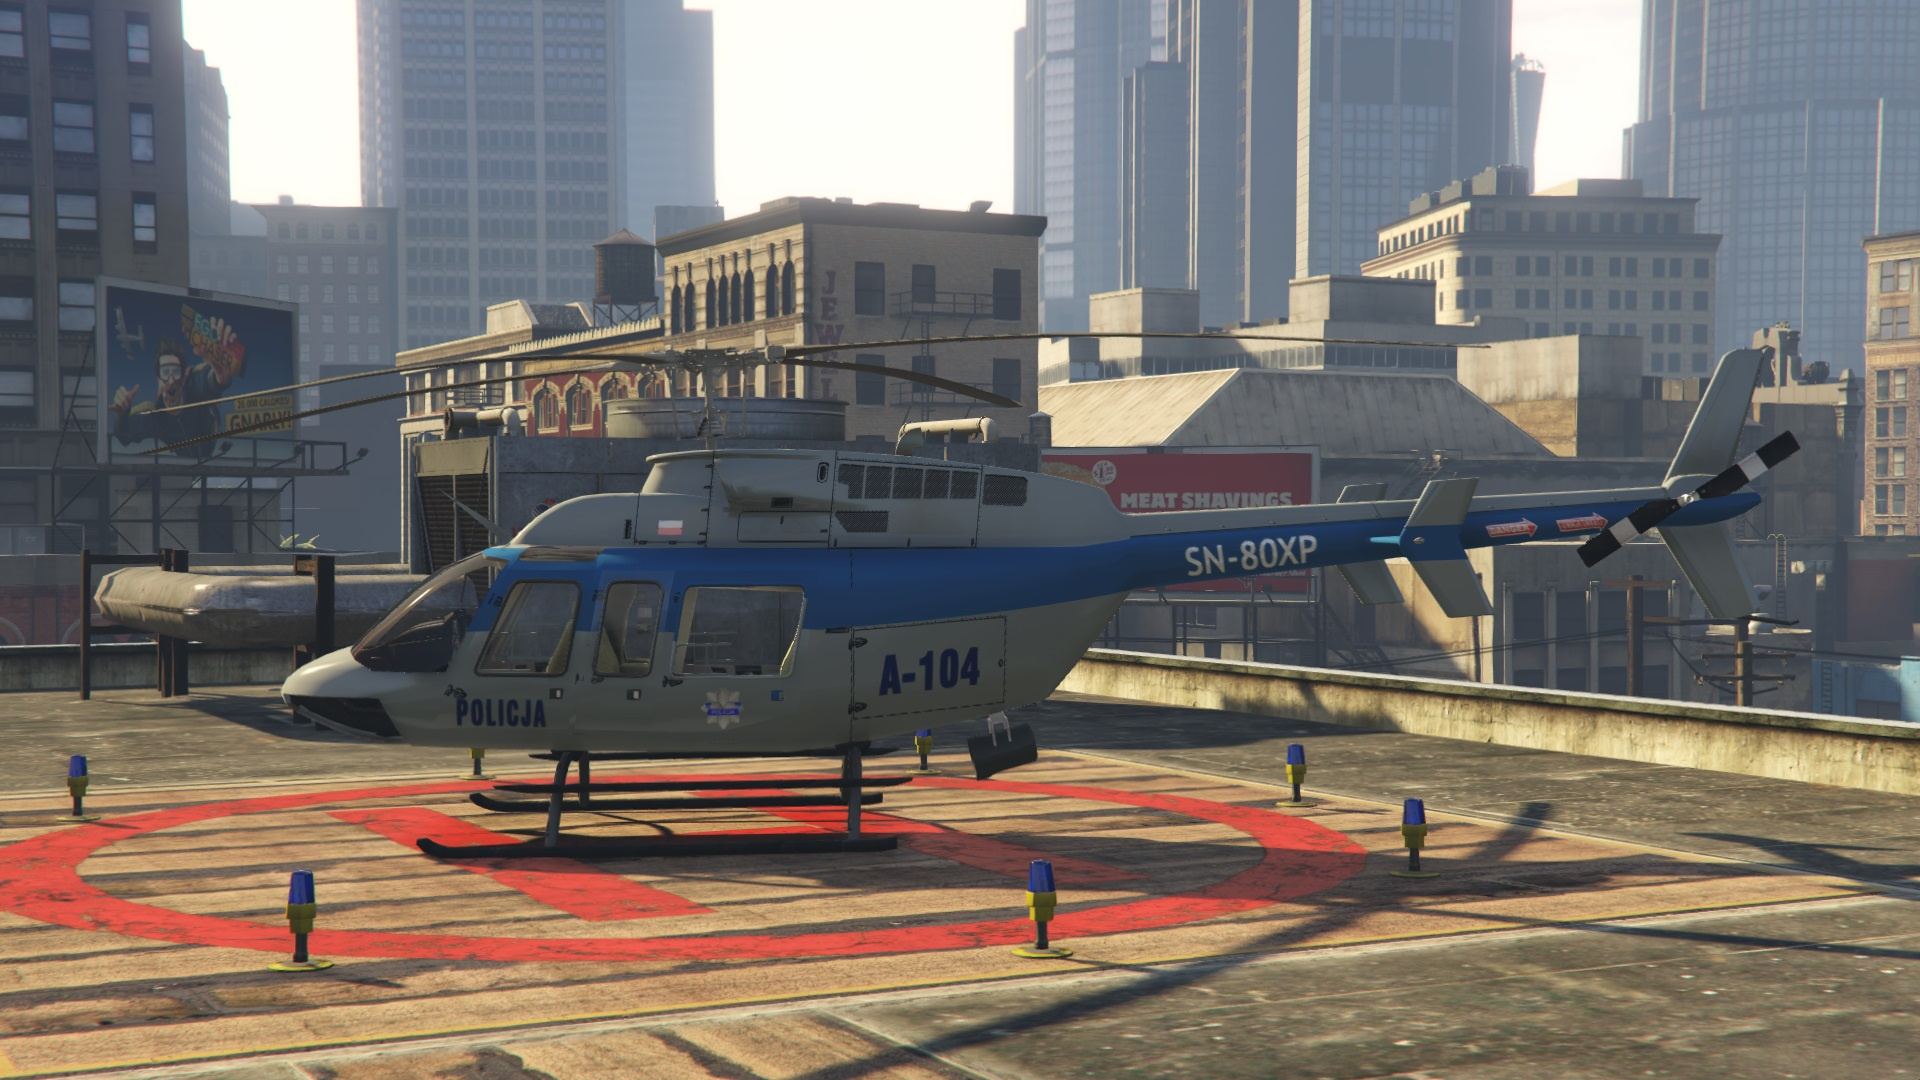 Гта мод вертолет. Police Helicopter GTA 5. Вертолет Bell 407 Police. Вертолет полиции в ГТА 5. Полицейский вертолет ГТА 5.